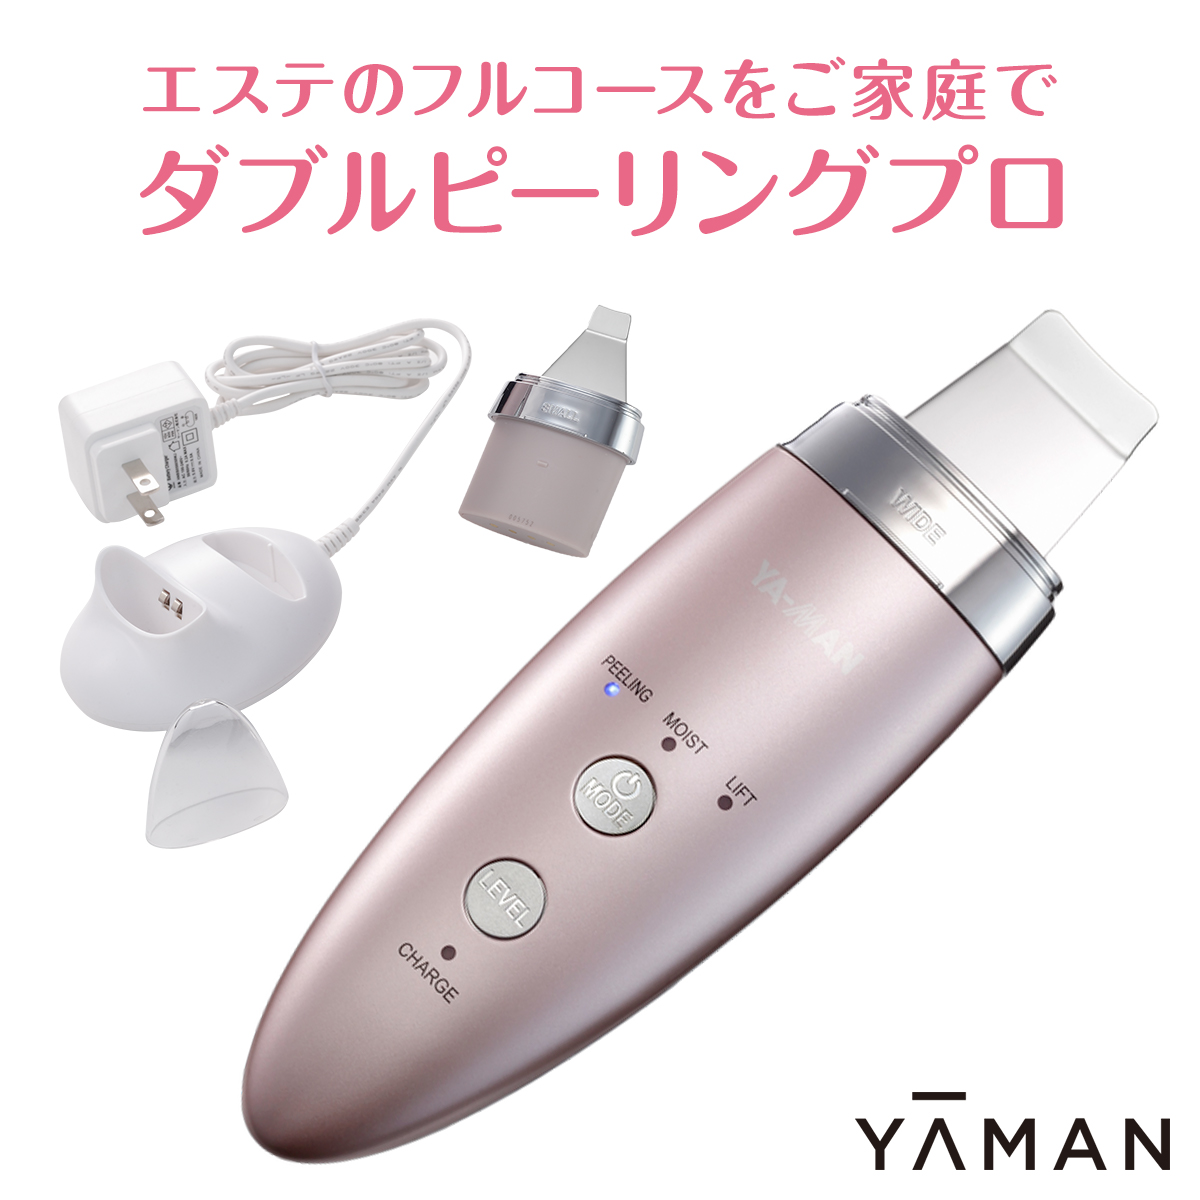 ヤーマン ダブルピーリングプロ YA-MAN IB-36P-2 【送料無料】 | モノコーポレーション